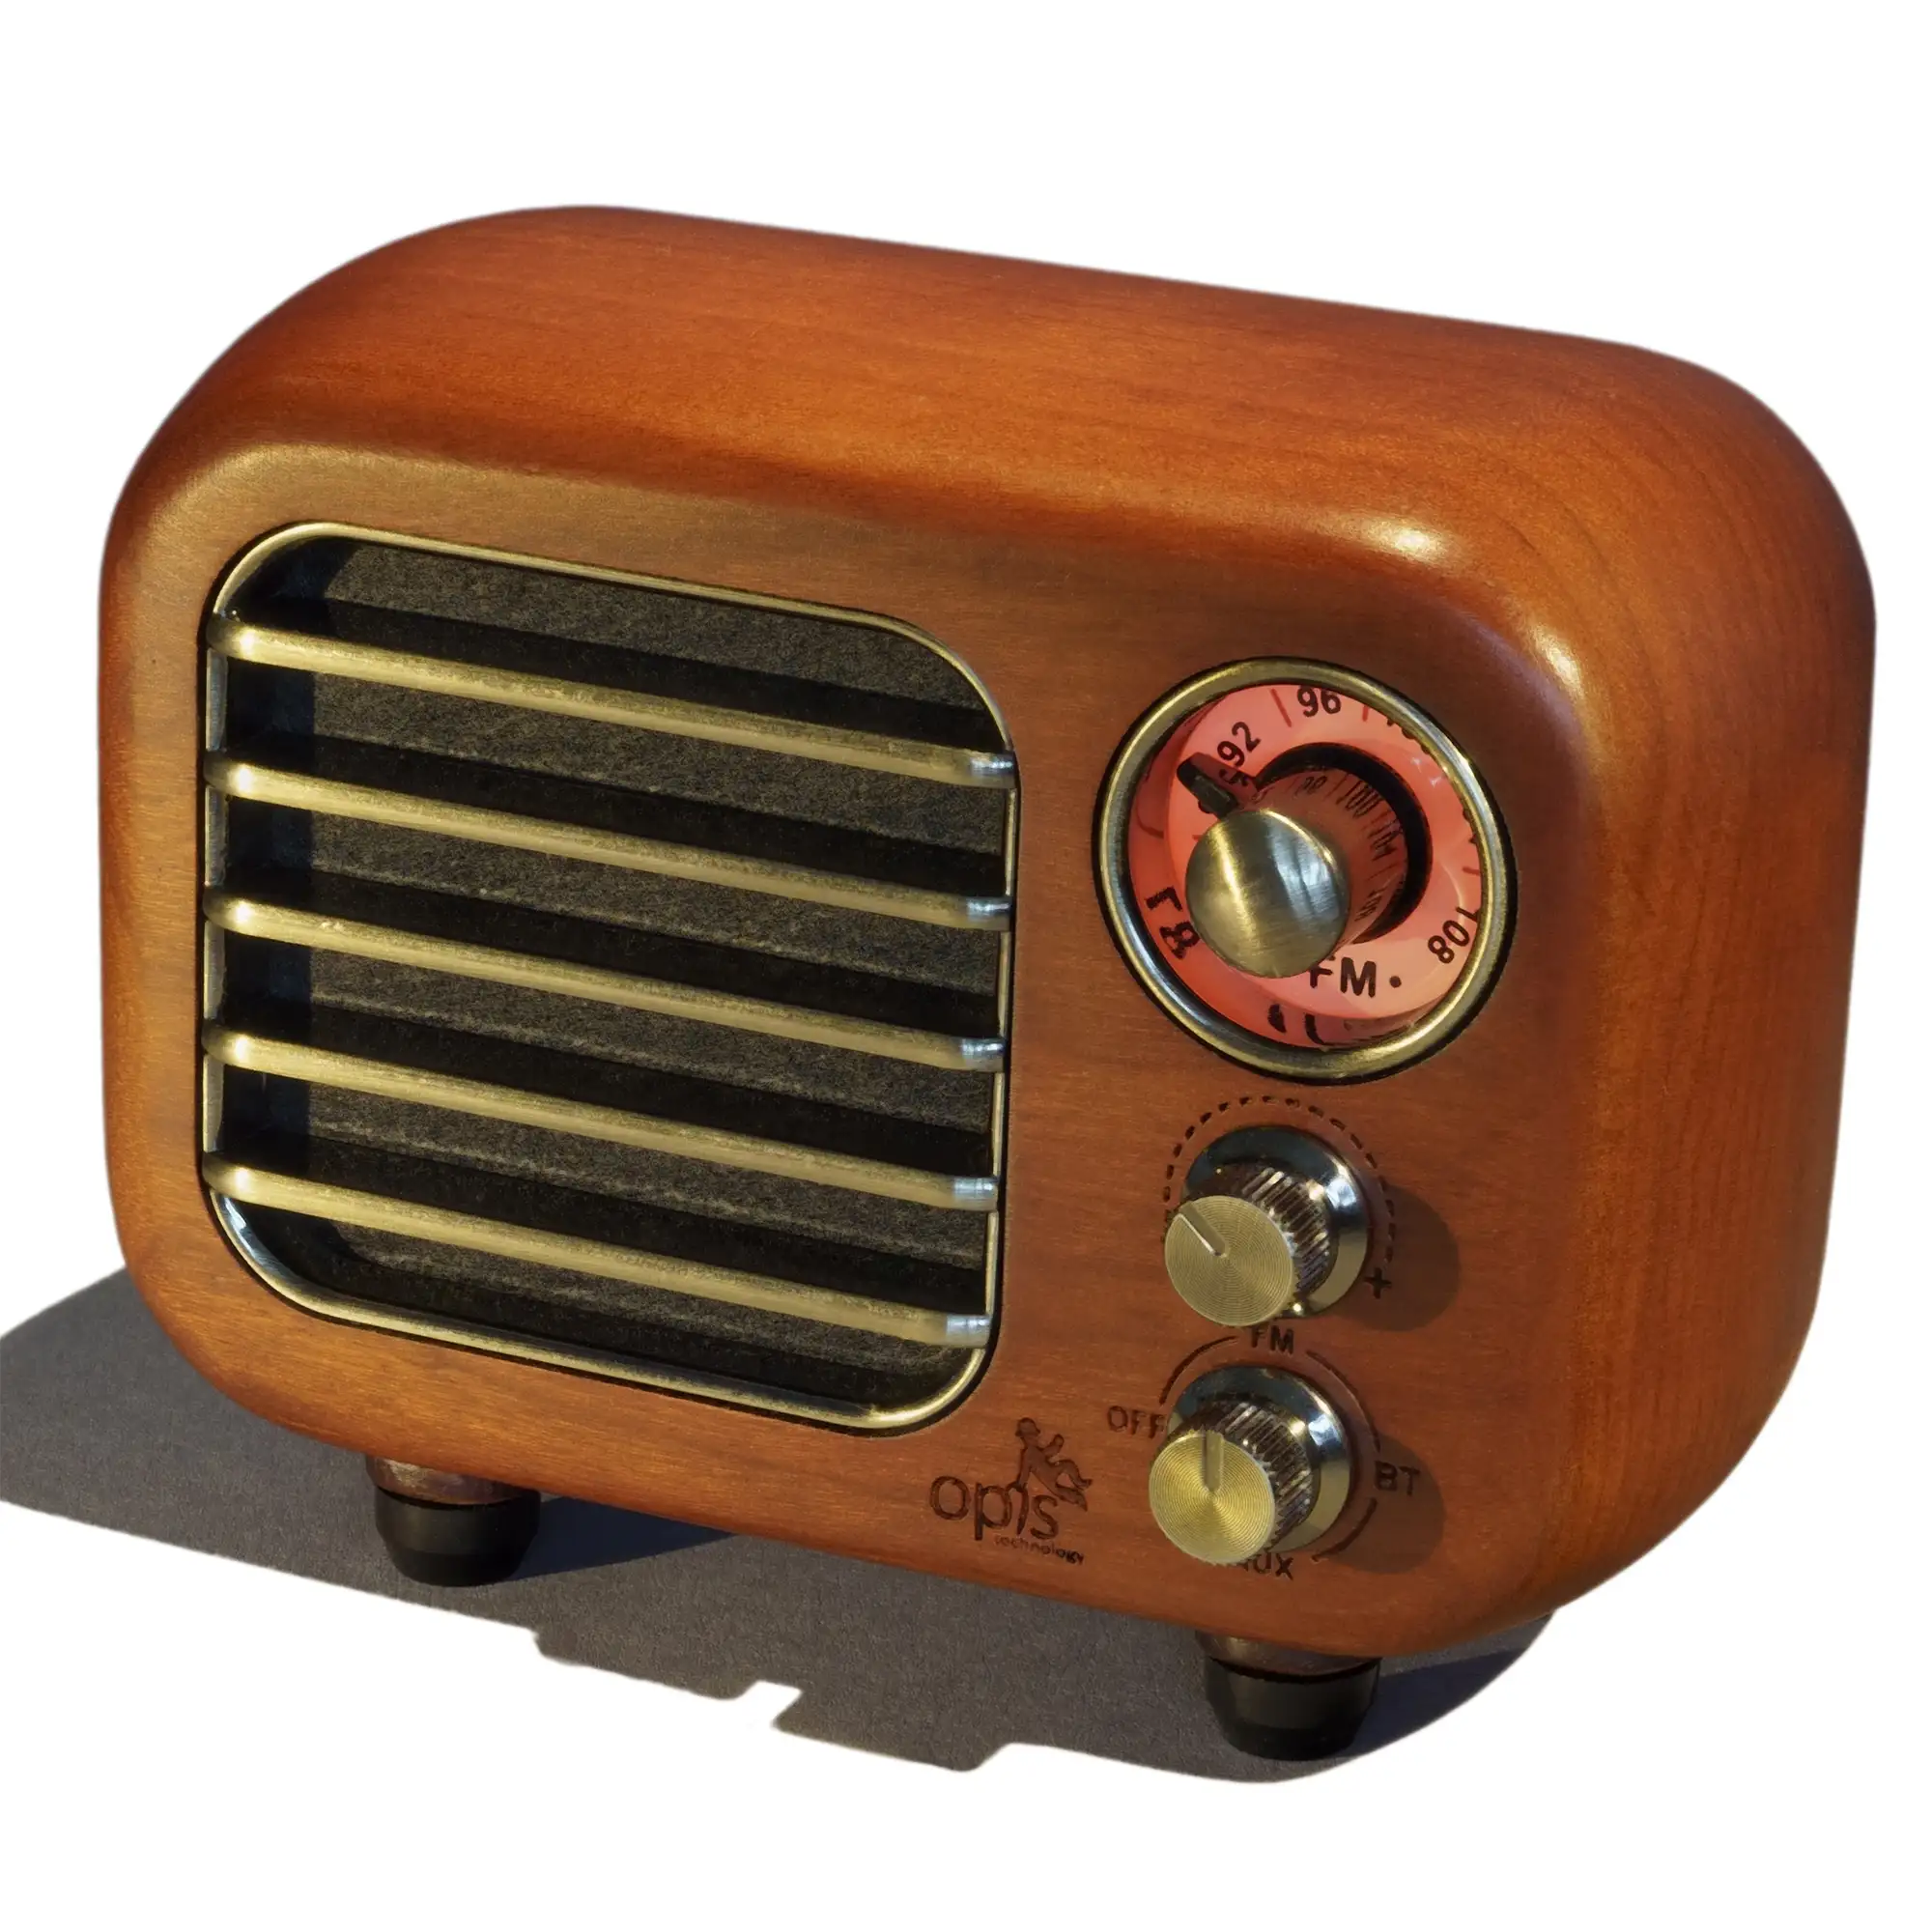  Altavoz Bluetooth retro de radio vintage, radio FM de madera de  cereza Greadio con estilo clásico antiguo, fuerte mejora de bajos, volumen  fuerte, conexión inalámbrica Bluetooth 5.0, tarjeta TF y reproductor